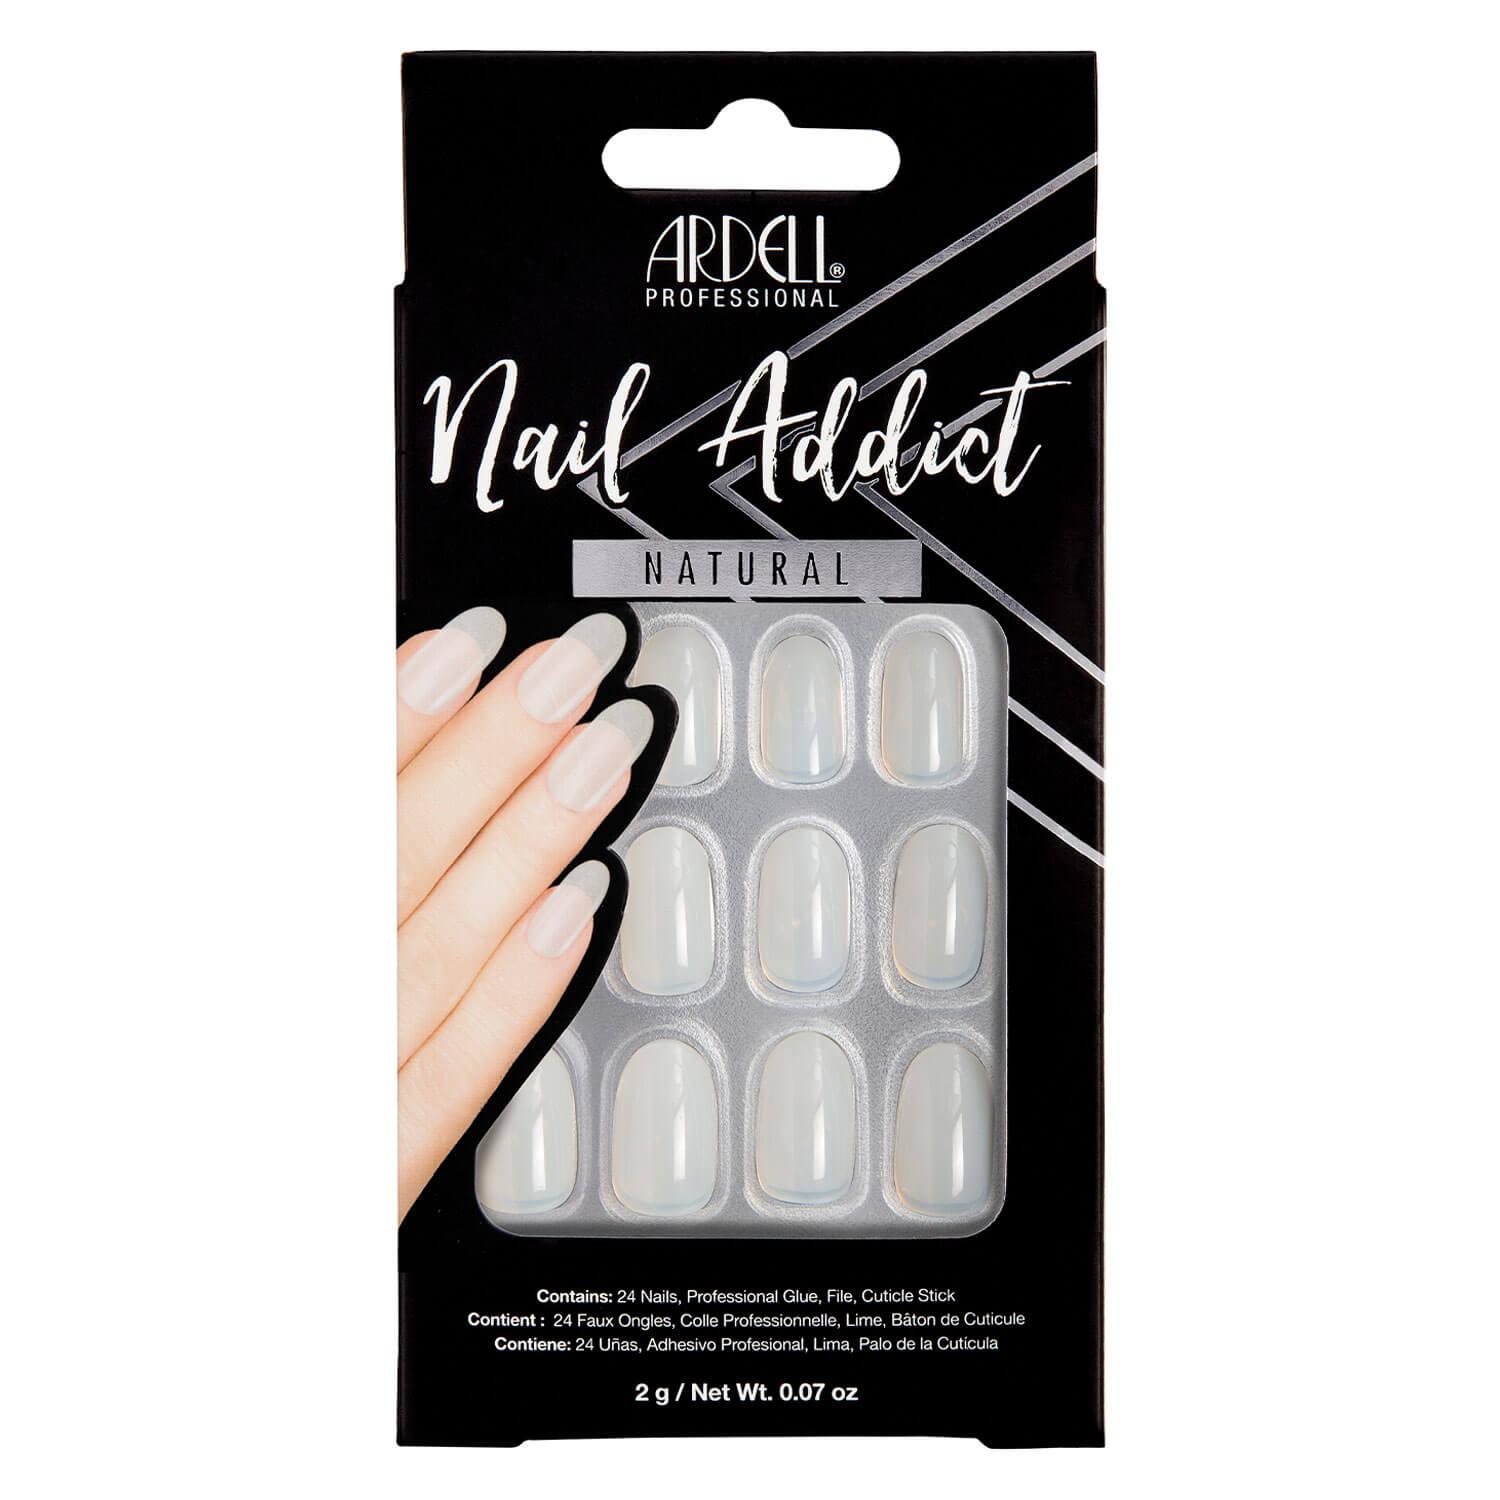 Nail Addict - Nail Addict Natural Oval